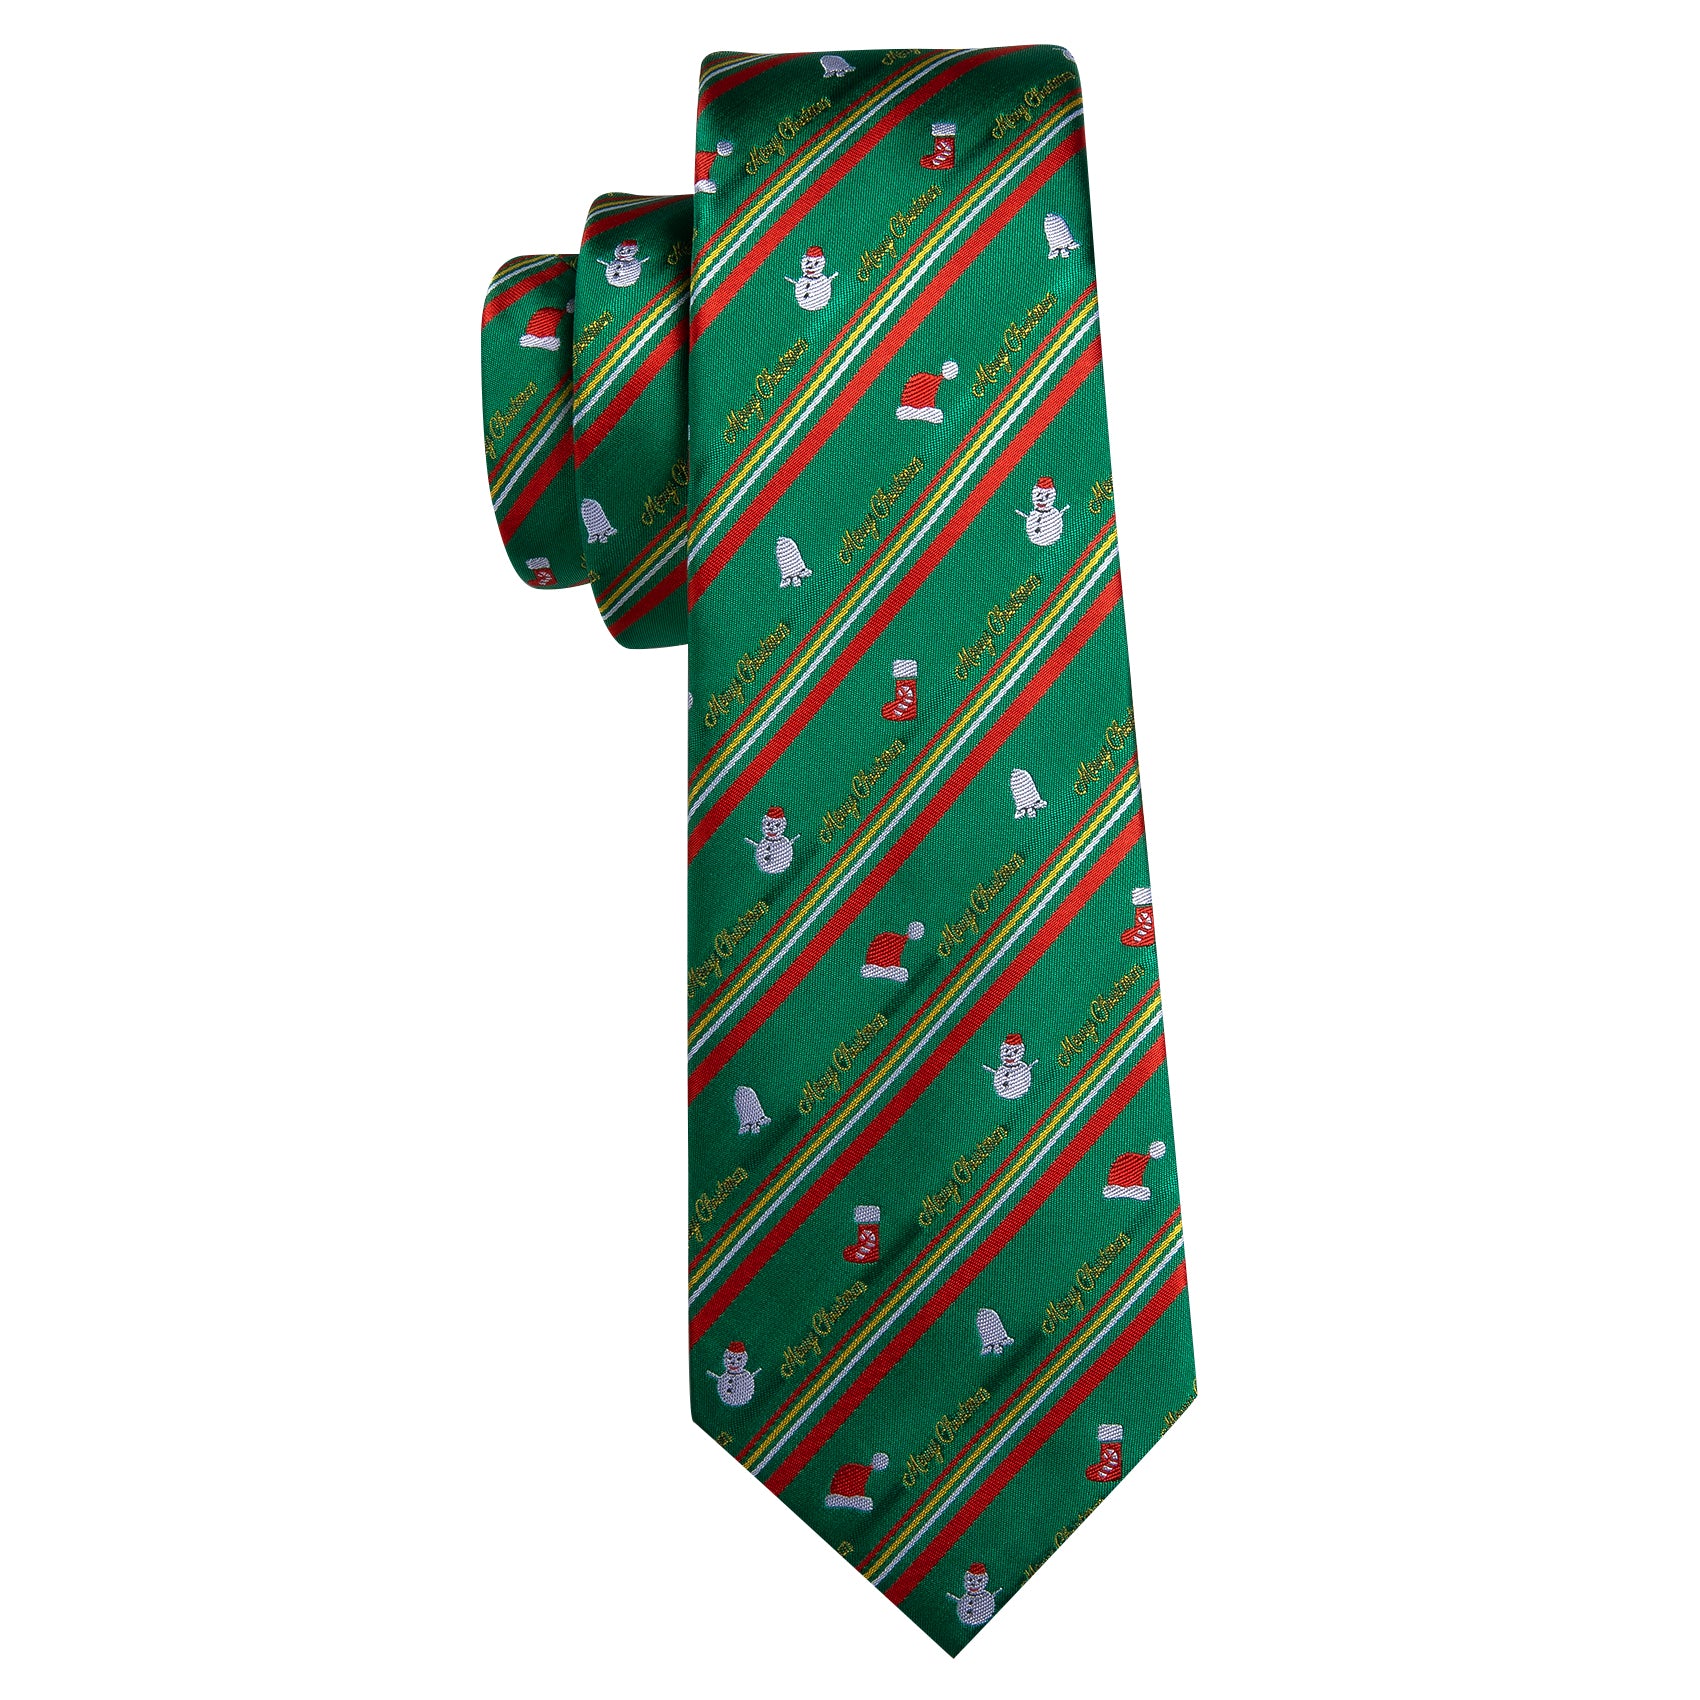 Barry.wang Christmas Tie Green Red Snowman Pattern Men's Tie Hanky Cufflinks Set